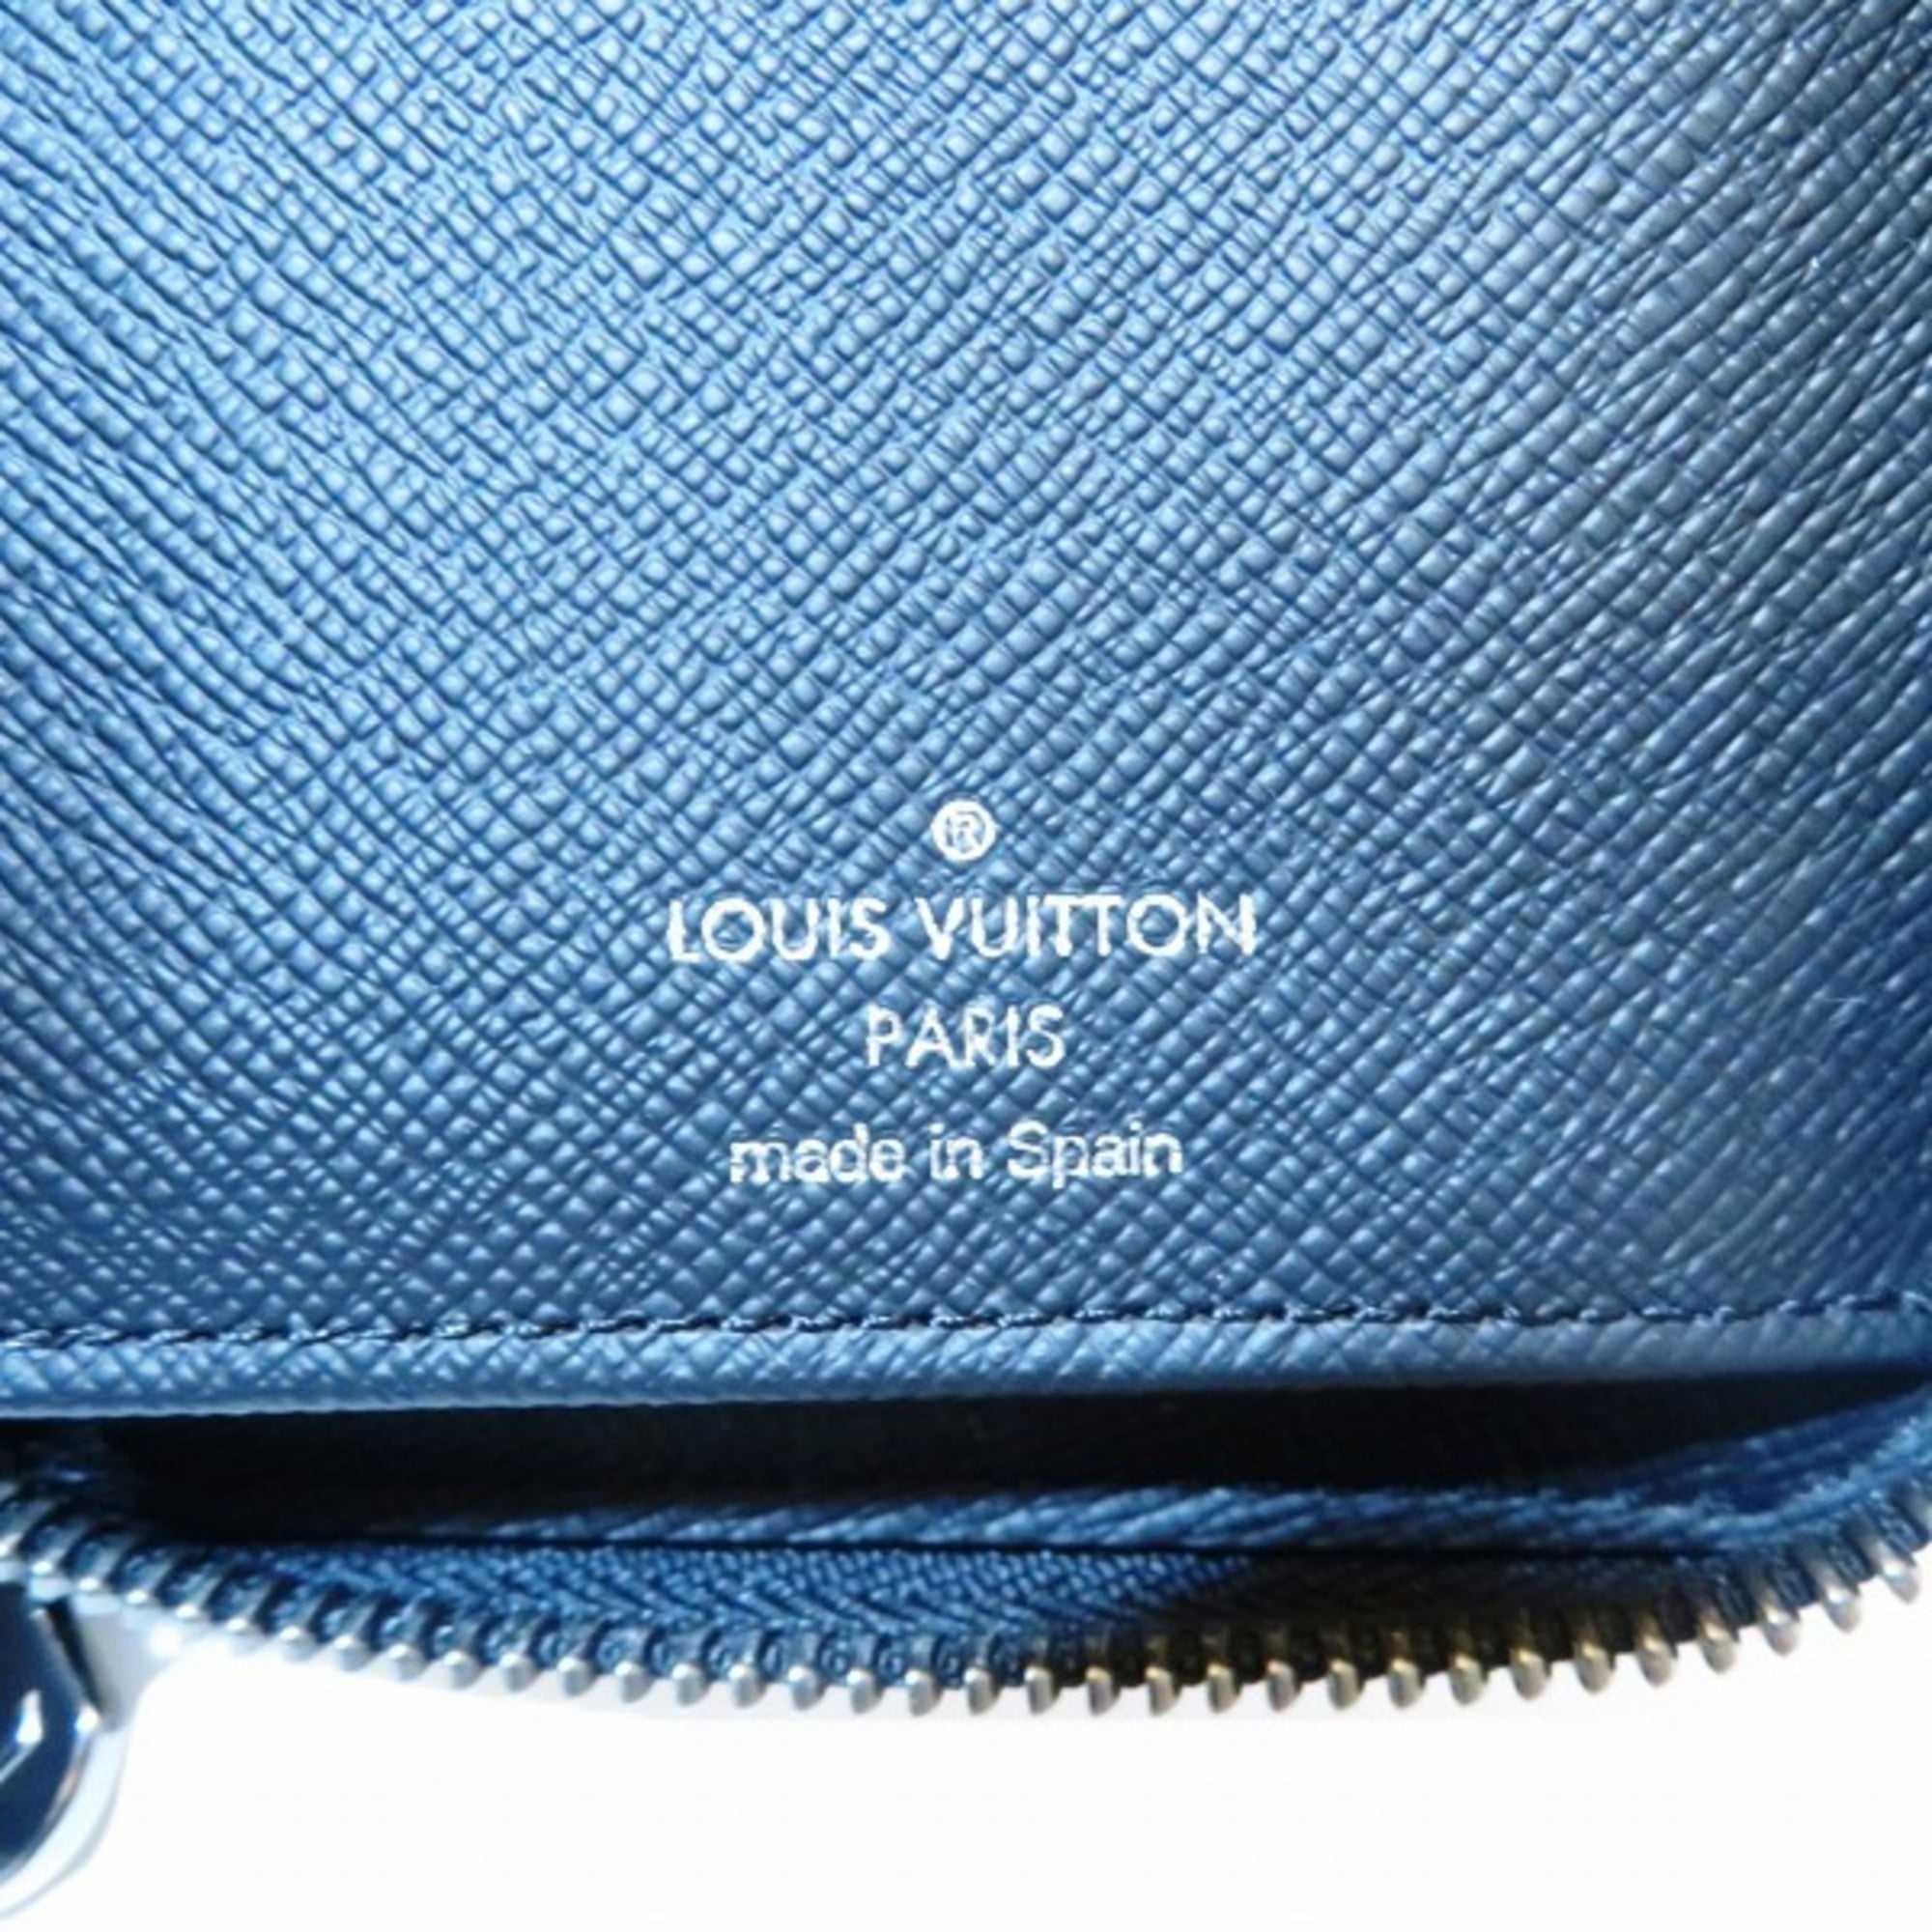 Authentic Louis Vuitton Zippy XL Taiga Leather Black Mens Big Wallet Clutch  Bag